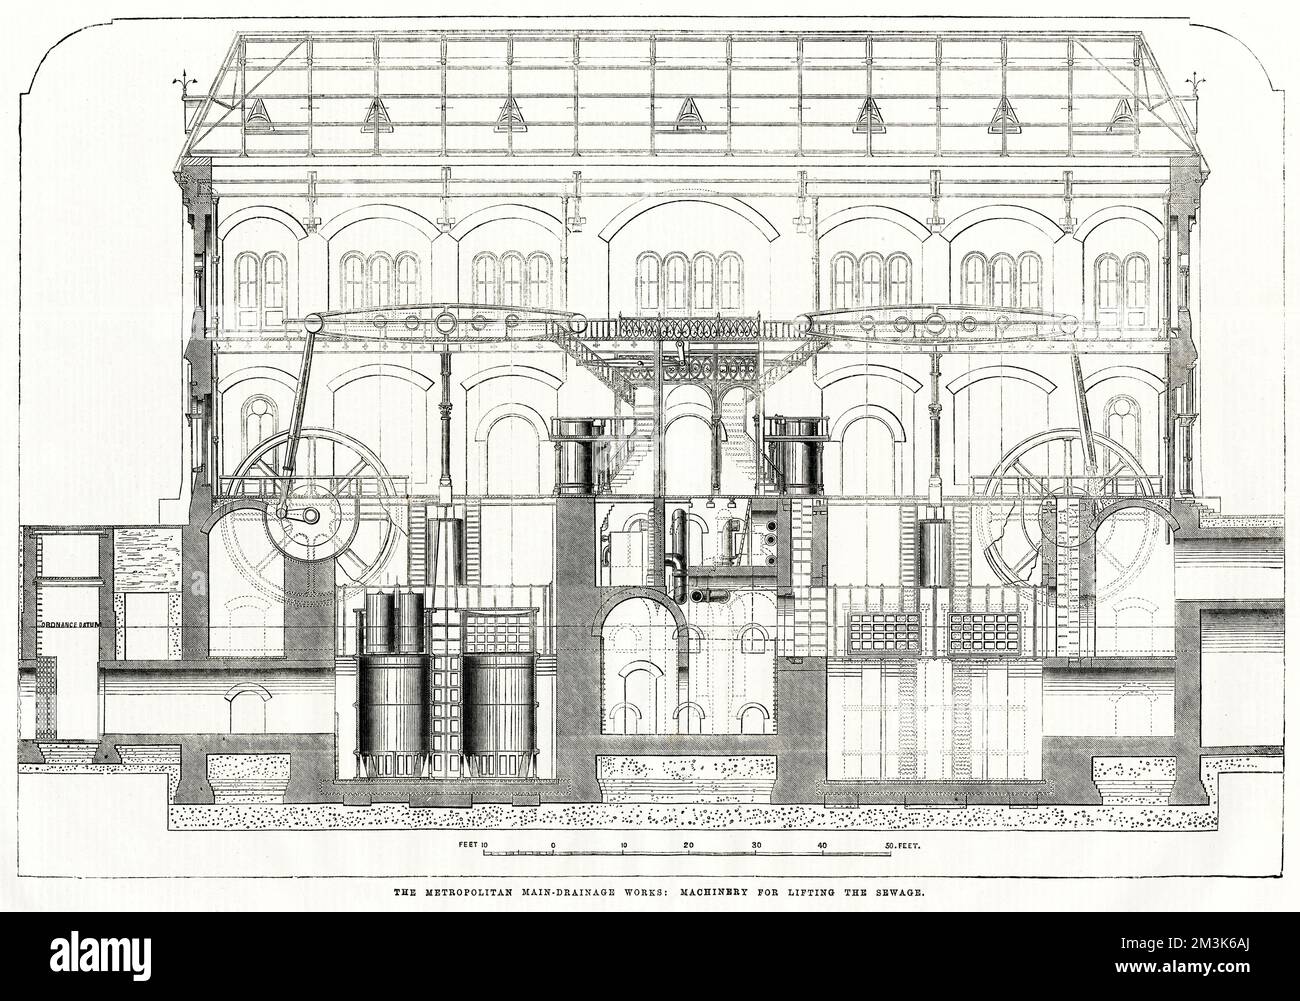 Sezione trasversale del macchinario presso il Metropolitan Main Drainage Works di Crossness, 1864. Il macchinario mostrato è stato usato per pompare via le acque reflue di Londra. 1864 Foto Stock